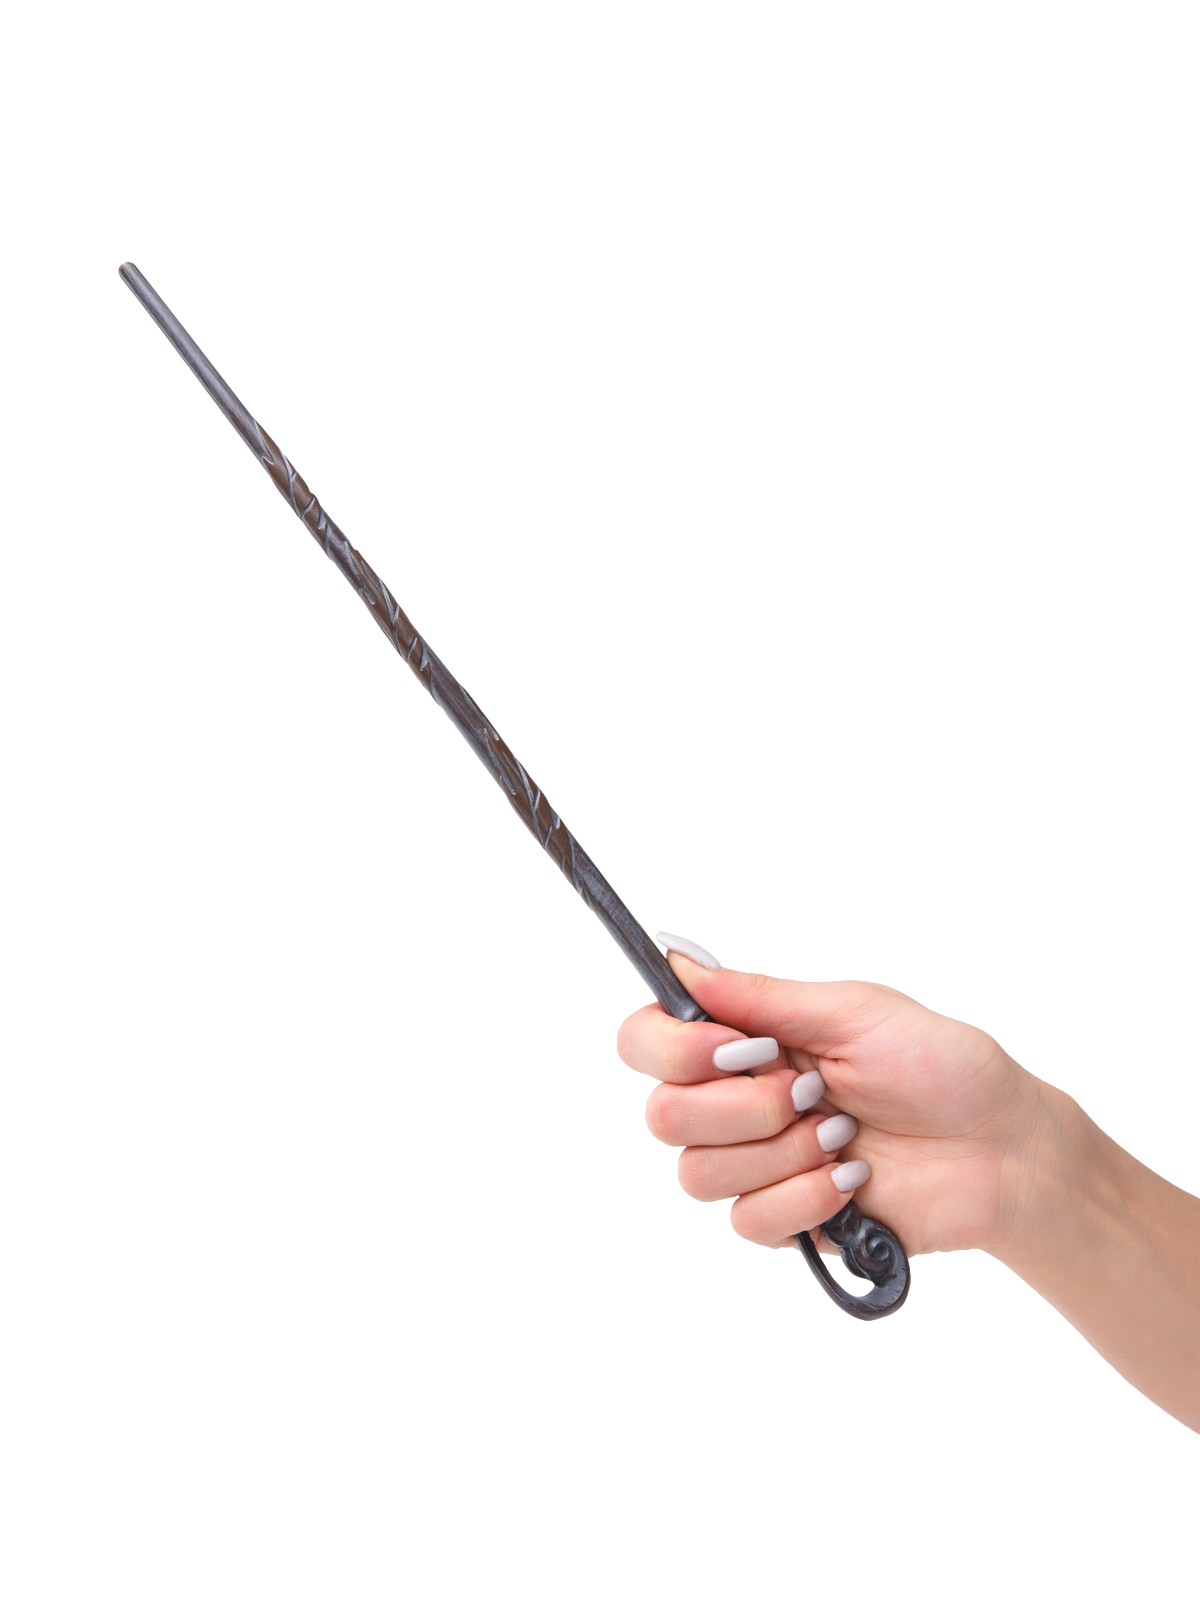 Волшебная палочка Флер Делакур из Гарри Поттера Froi маги и волшебники